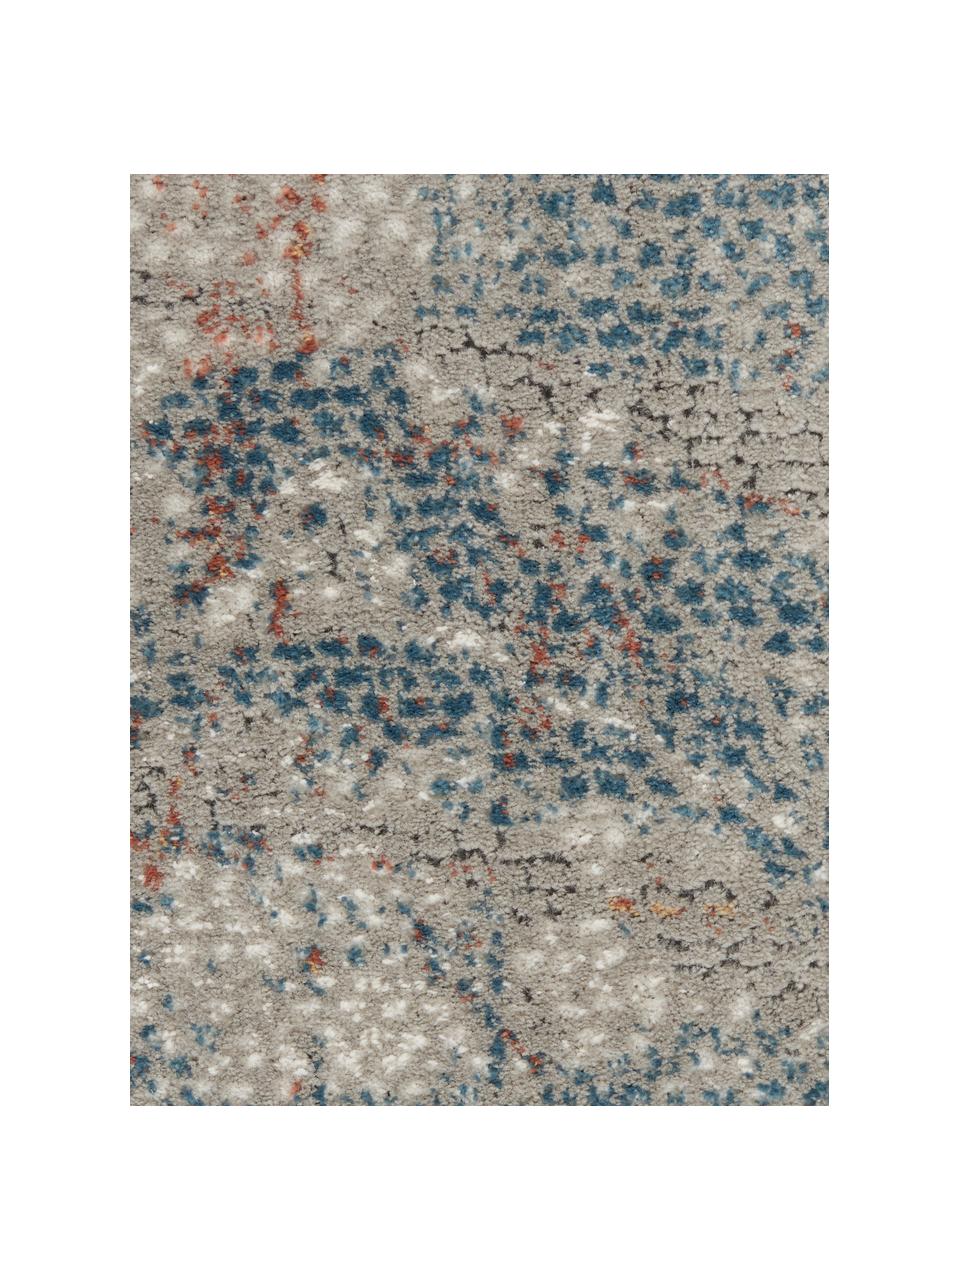 Vloerkleed met patroon Rustic in grijs/blauw/beige, Bovenzijde: 51% polypropyleen, 49% po, Onderzijde: latex, Grijs, blauw, beige, B 240 x L 320 cm (maat L)